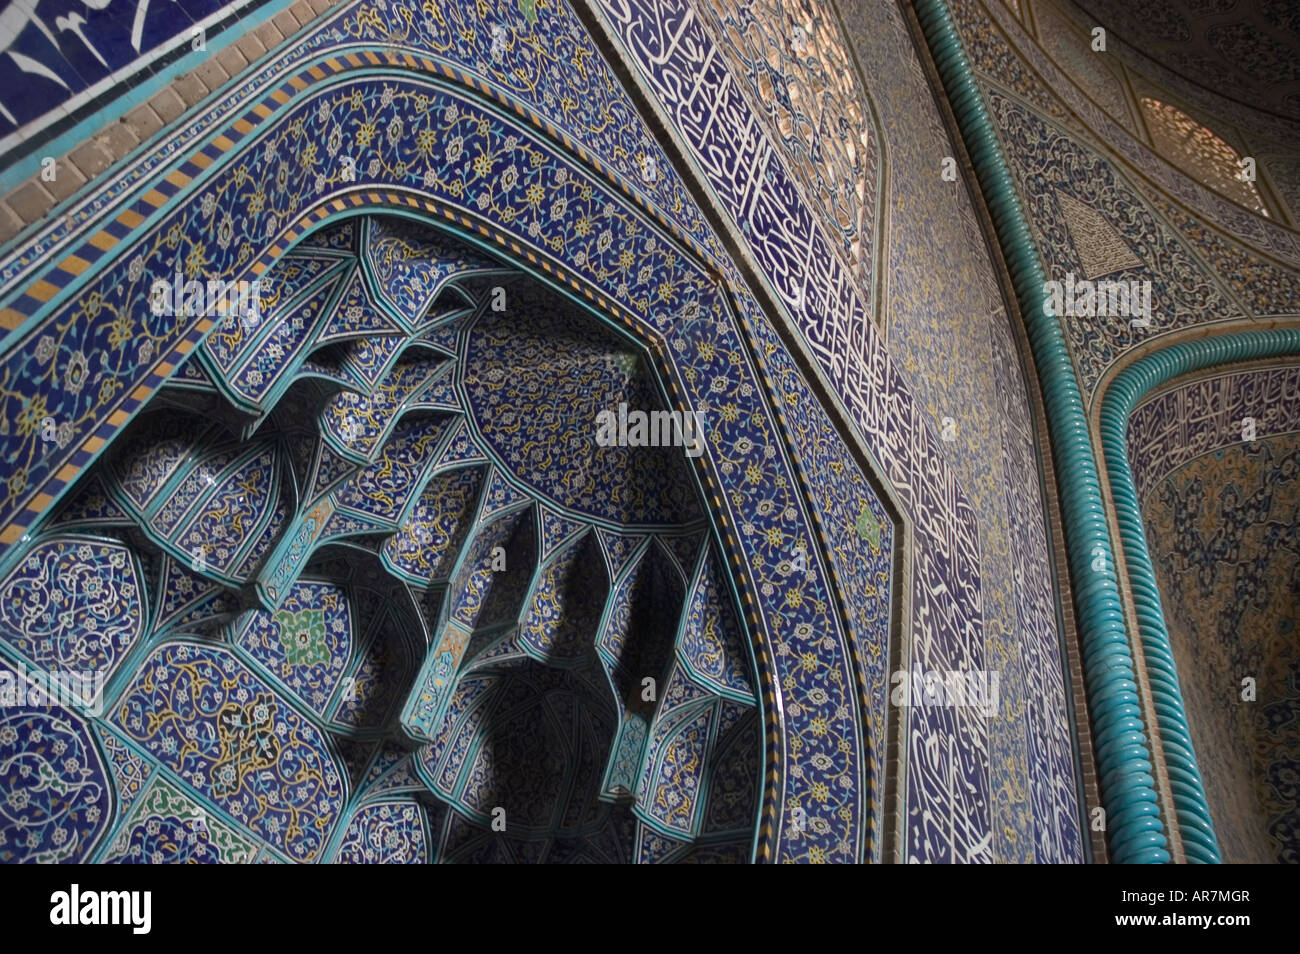 Abstract floral détail de la mosaïque complexe de travail intérieur de la Mosquée du Sheikh Lotfallah, Naghsh-i Jahan Square, Esfahan Iran. Banque D'Images